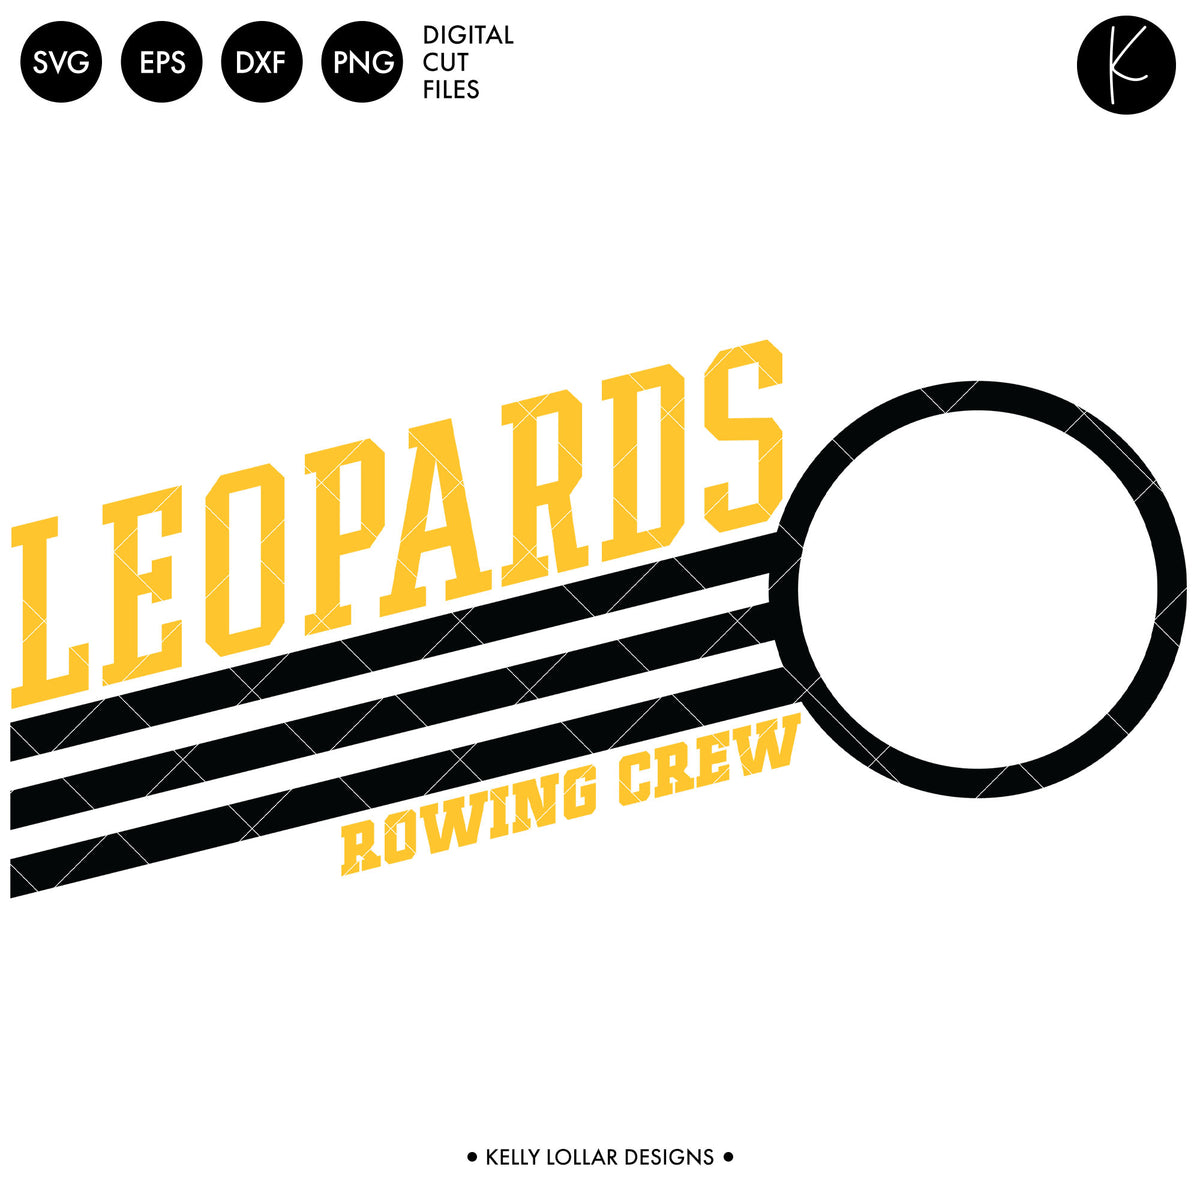 Leopards Rowing Crew Bundle | SVG DXF EPS PNG Cut Files